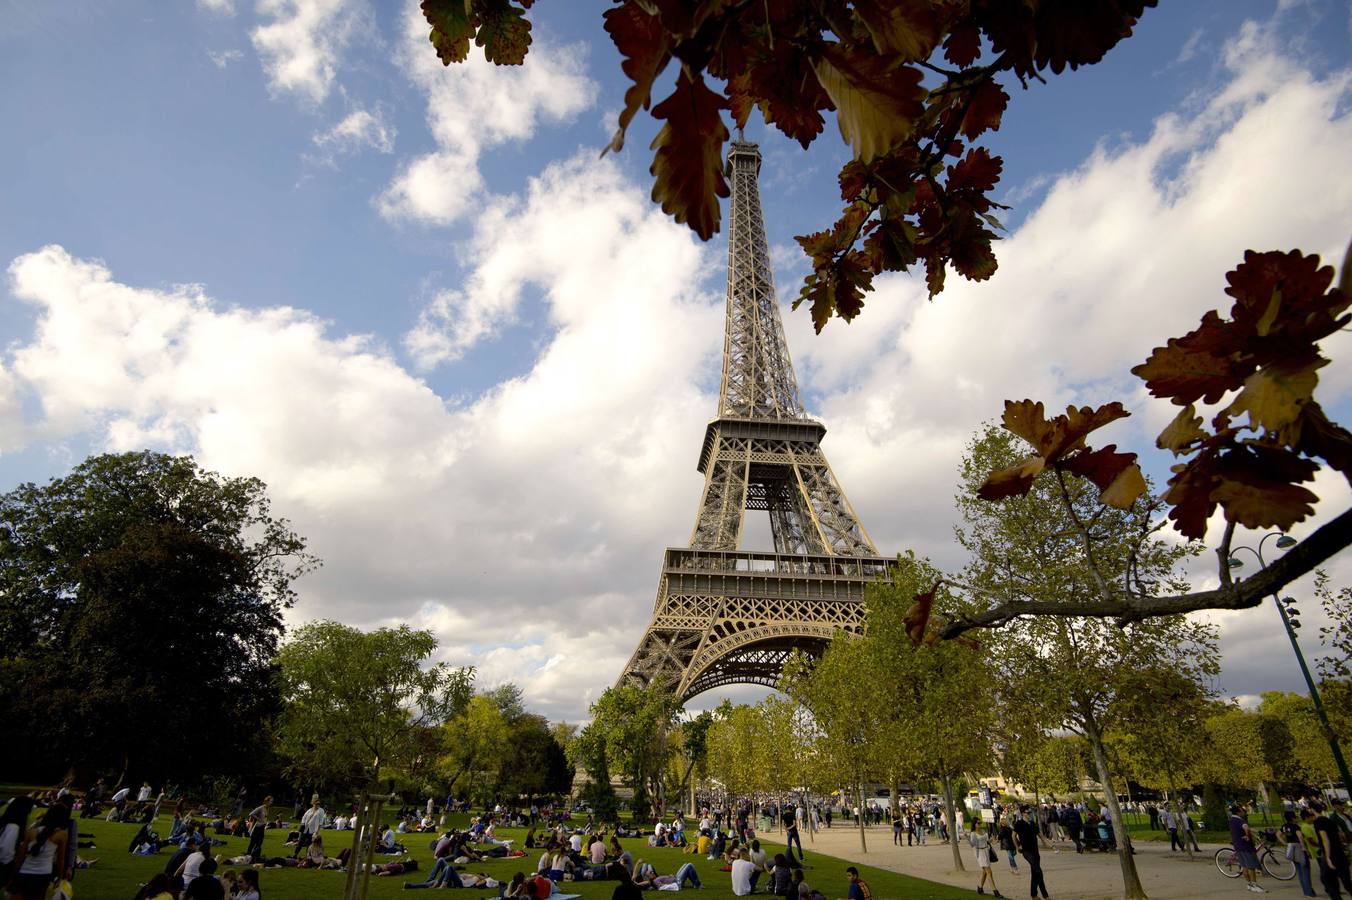 París. Más conocida como 'La ciudad del amor', está considerada como la ciudad más bella del mundo.